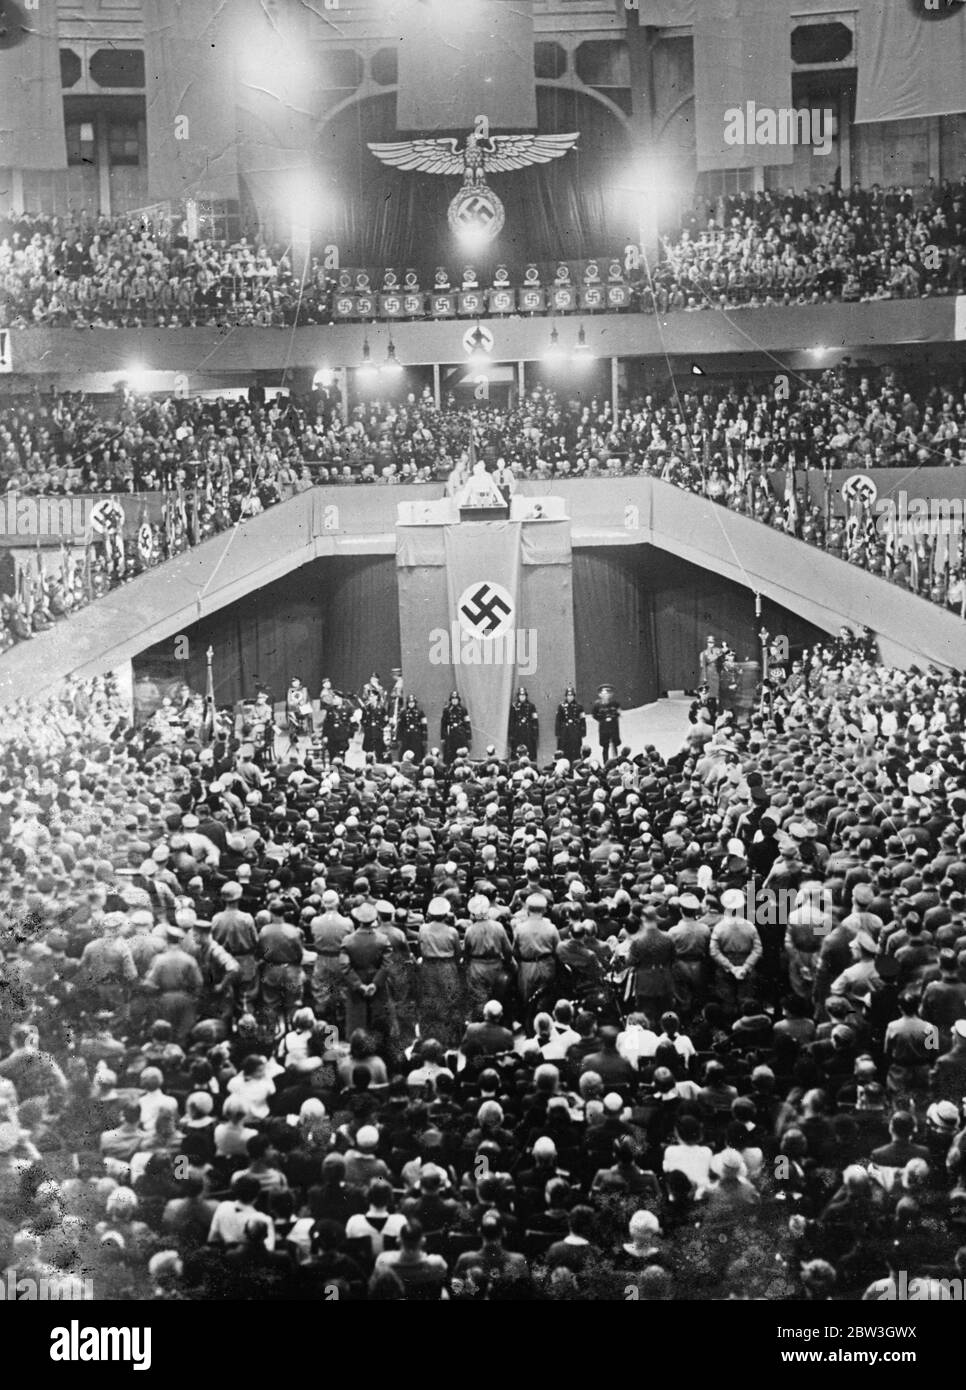 Ich werde bereit sein, eine Einigung zu erzielen. Hitler macht neuen Appell an Frankreich in Frankfort Wahlrede. Bundeskanzler Hitler spricht die große Menschenmenge in Frankfurt am Main an. 17 März 1935 Stockfoto